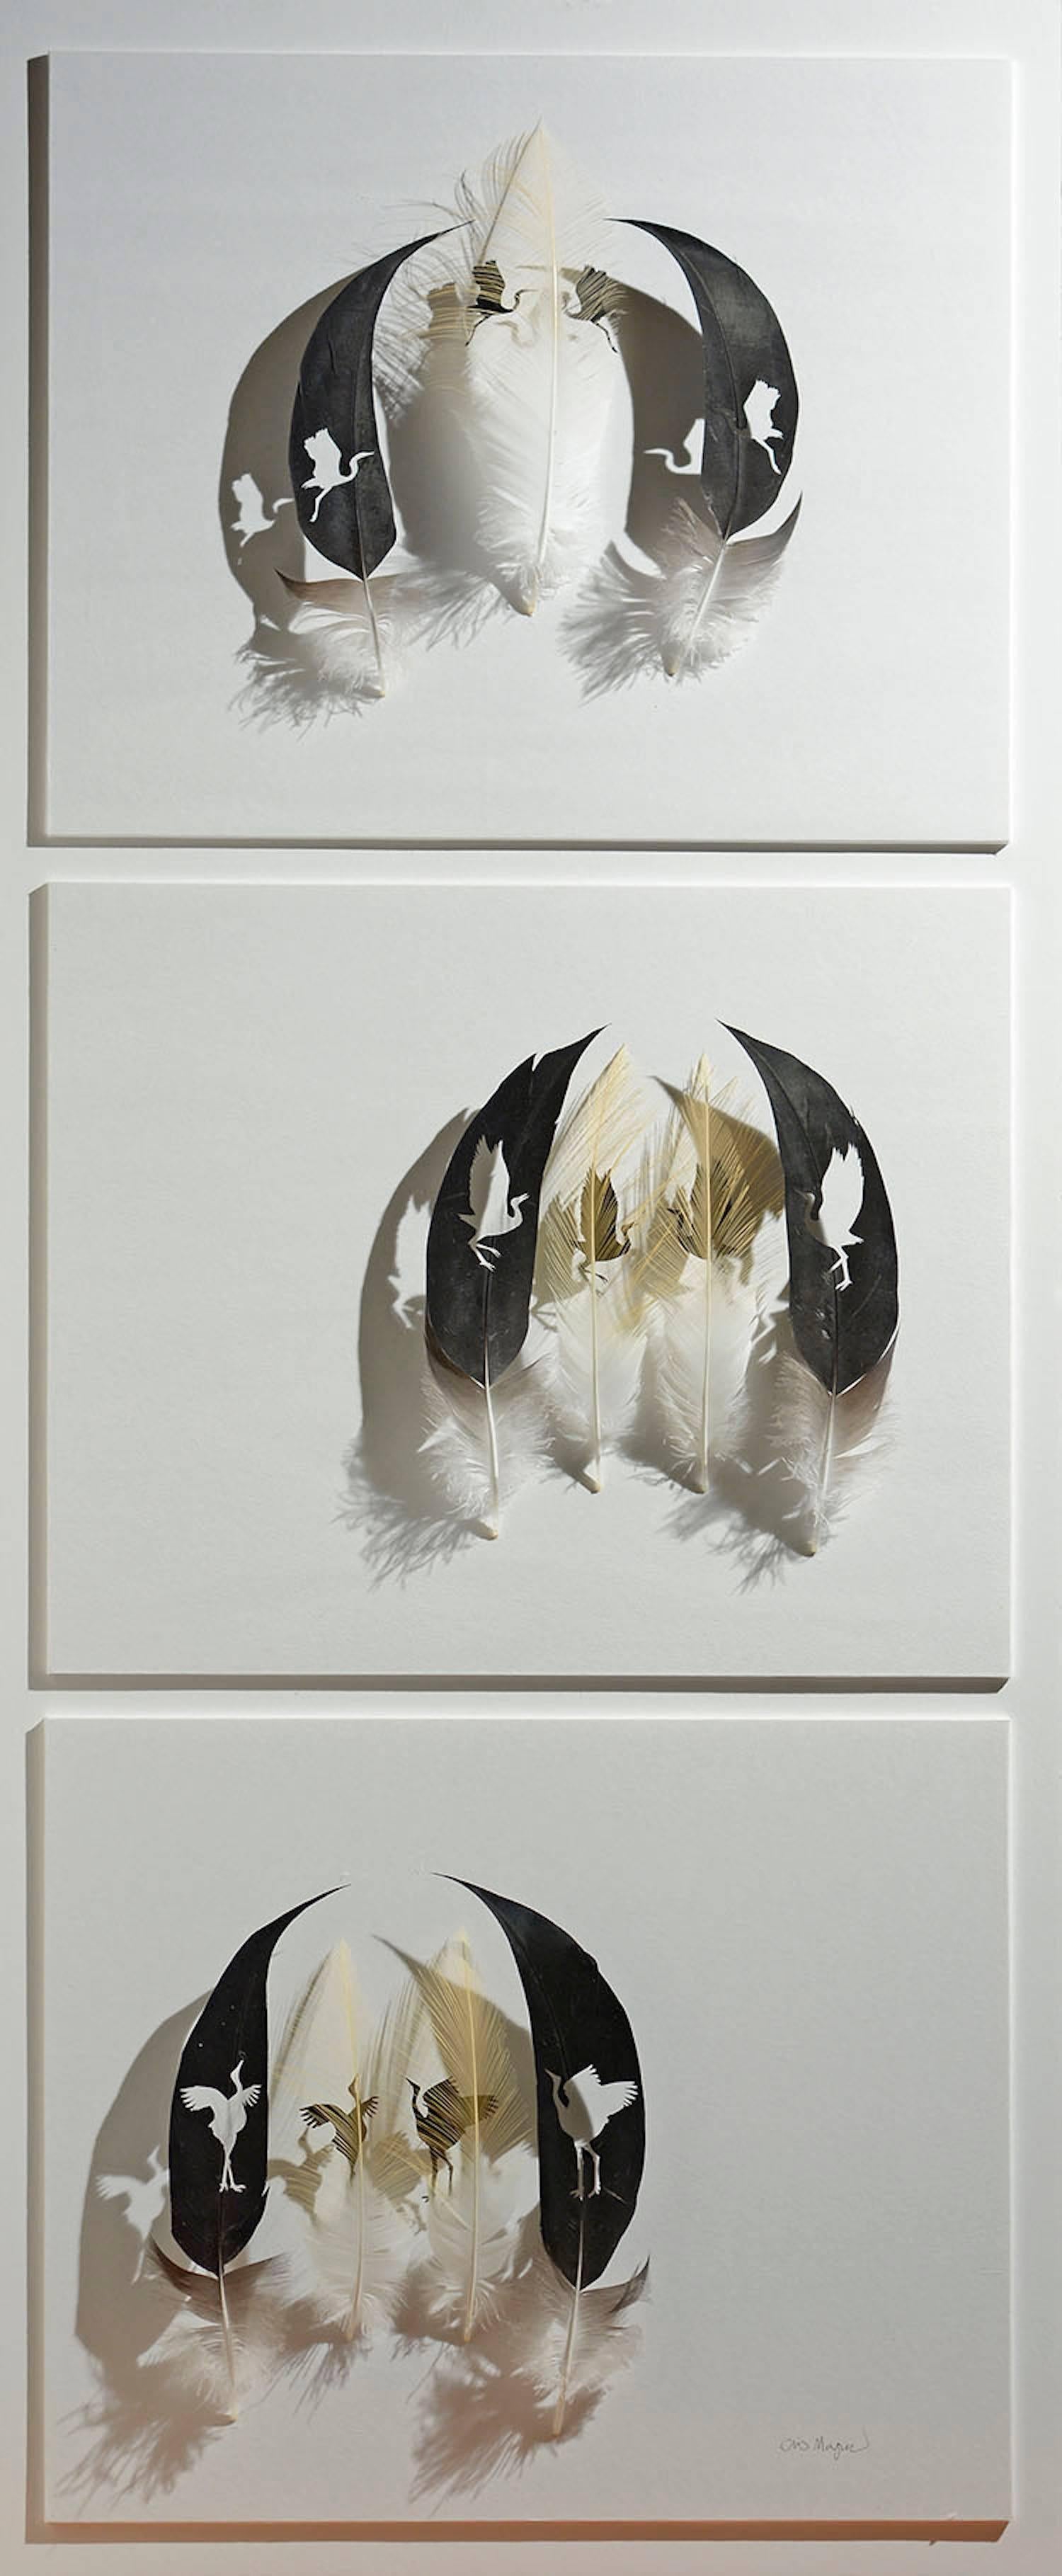 Chris Maynard Animal Art - Crane Dance - brown black bird feather 3D wall sculpture composition on paper 